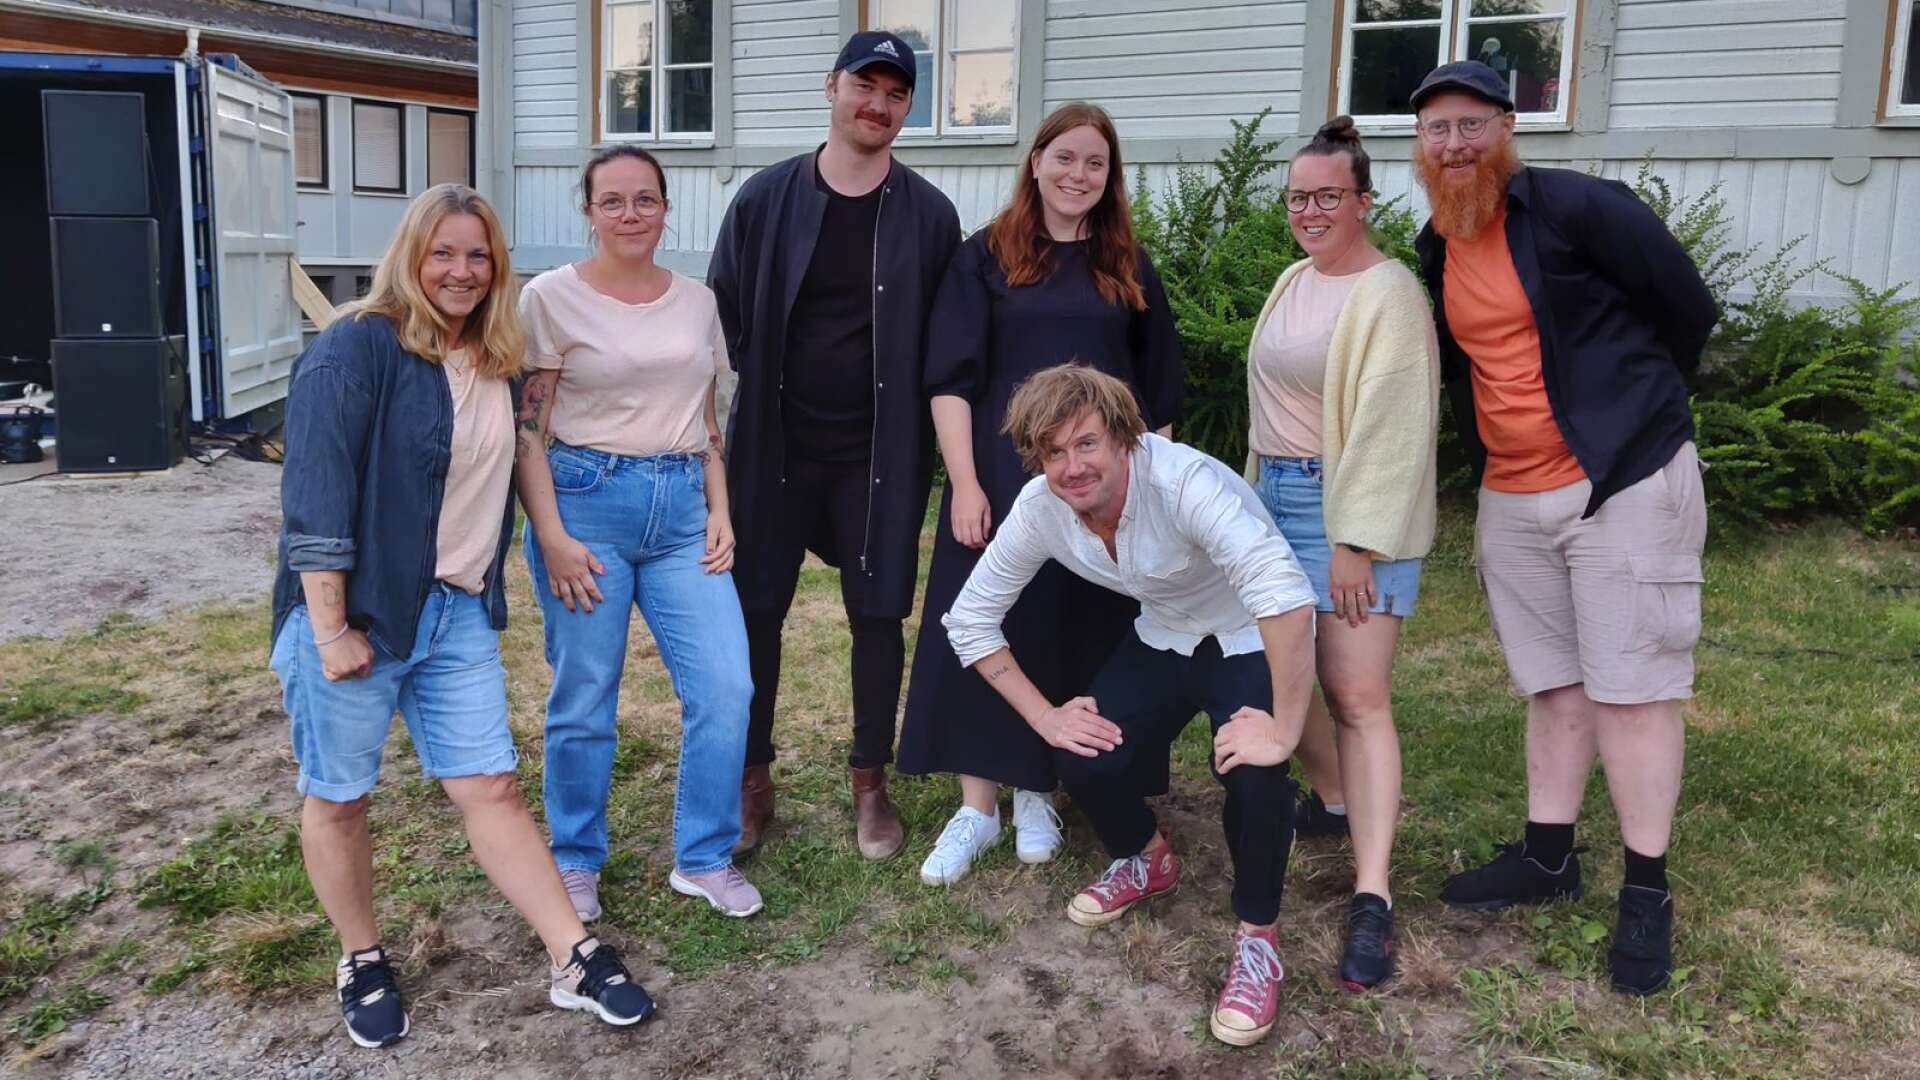 Åsa Rangfält (till vänster), Marie Persson, Pelle Håkman, Ida Staake, Frida Burström, Nisse Nilsson och Timo Räisänen har varit inblandade i Kreativa Egons tidigare evenemang - nu väntar nästa evenemang i form av Musik i Molkom den 13 augusti.